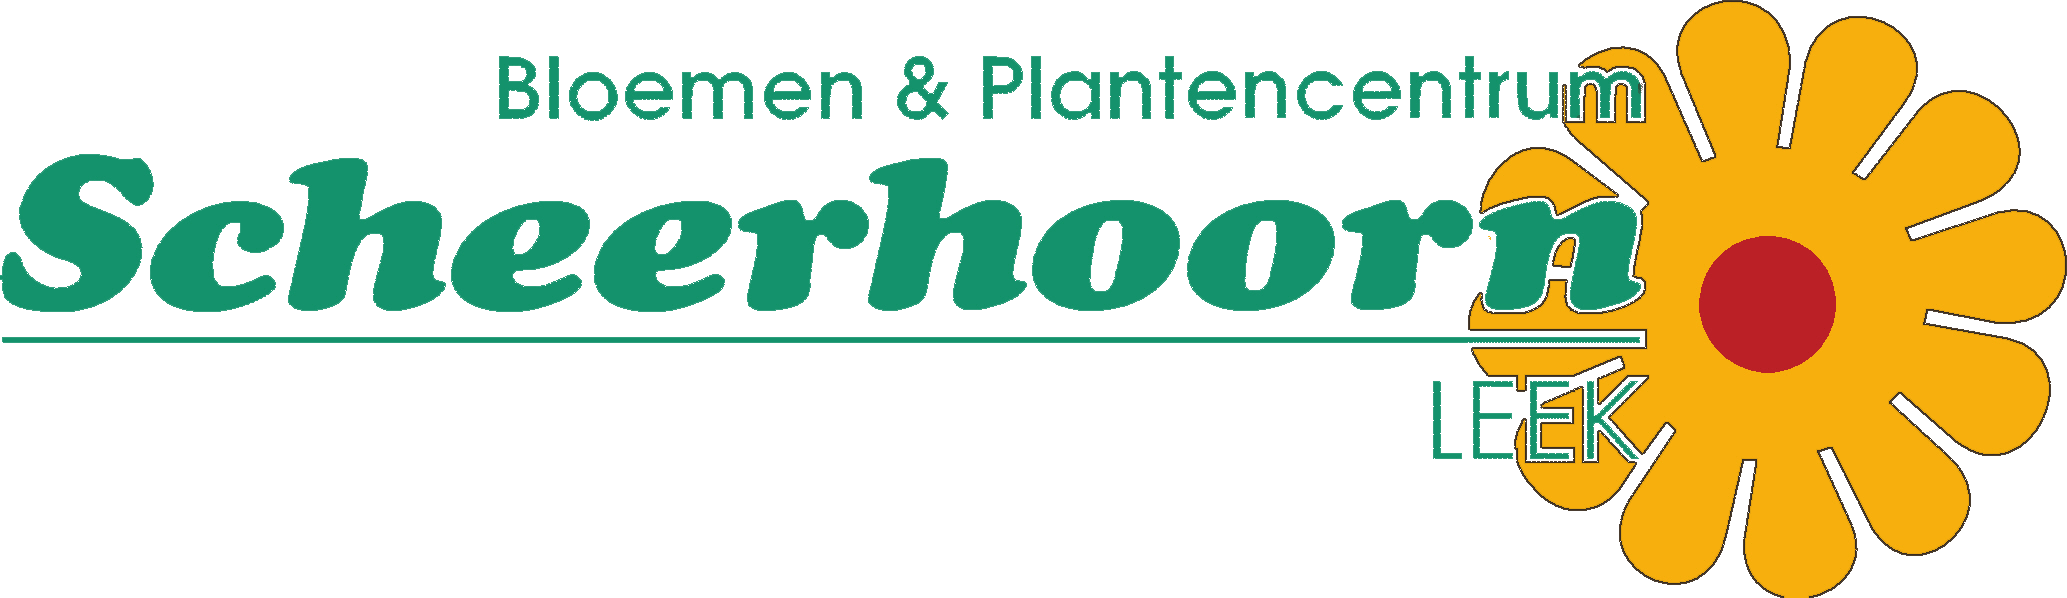 Logo Bloemen & Plantencentrum Scheerhoorn